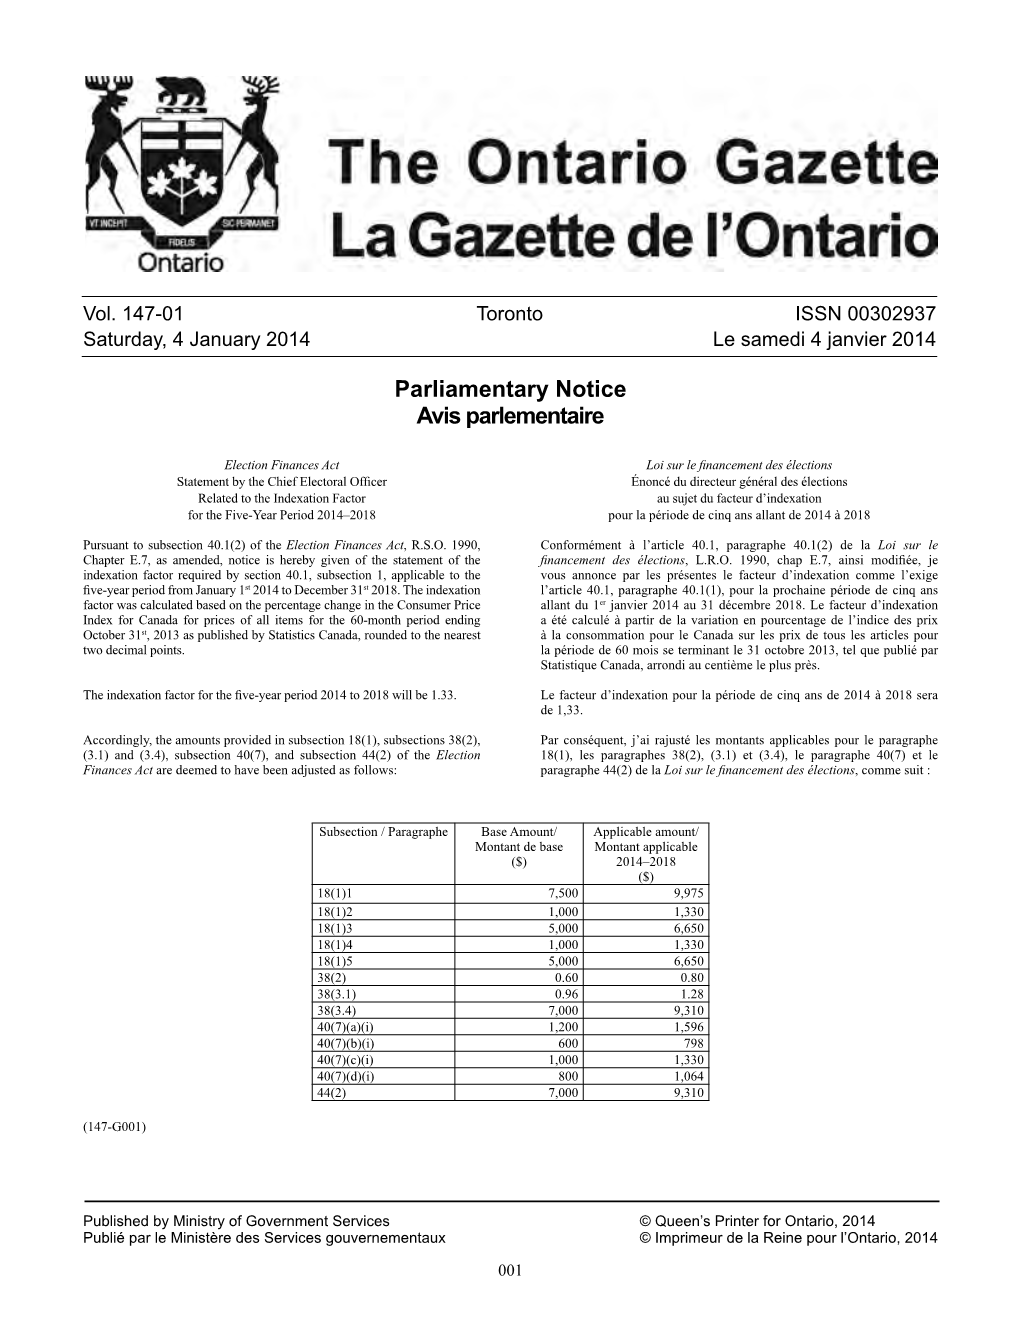 Ontario Gazette Volume 147 Issue 01, La Gazette De L'ontario Volume 147